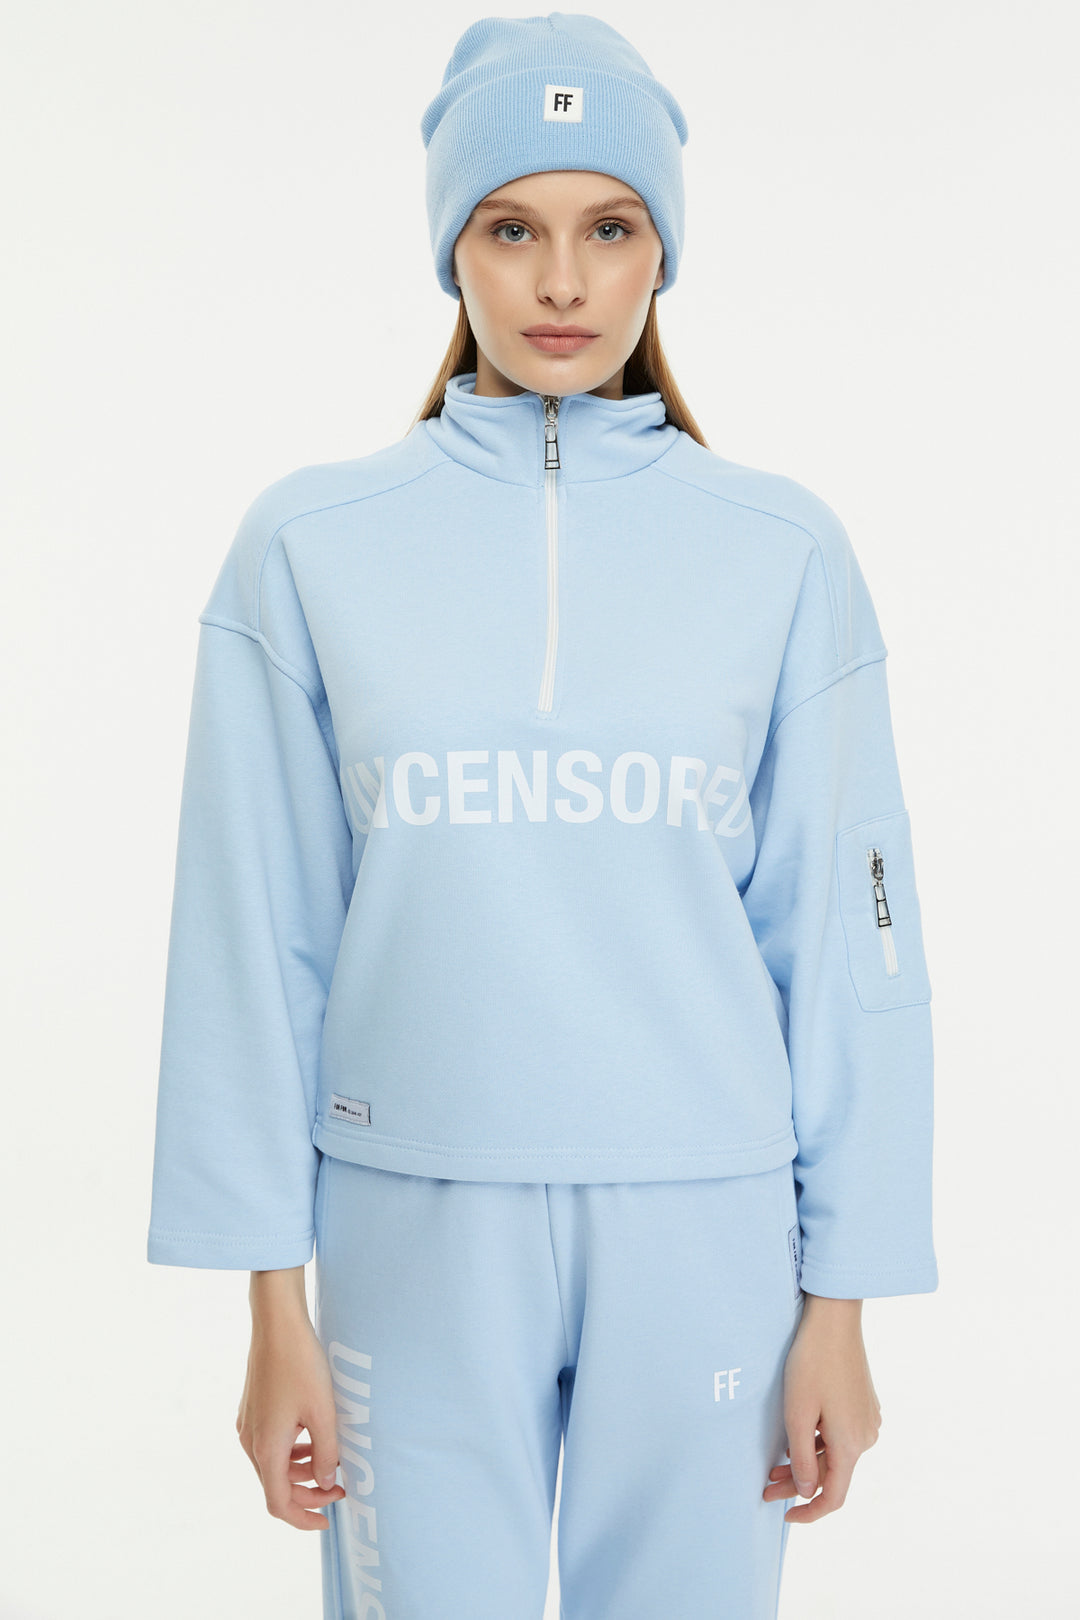 Uncensored / Zipper Women Sweatshirt